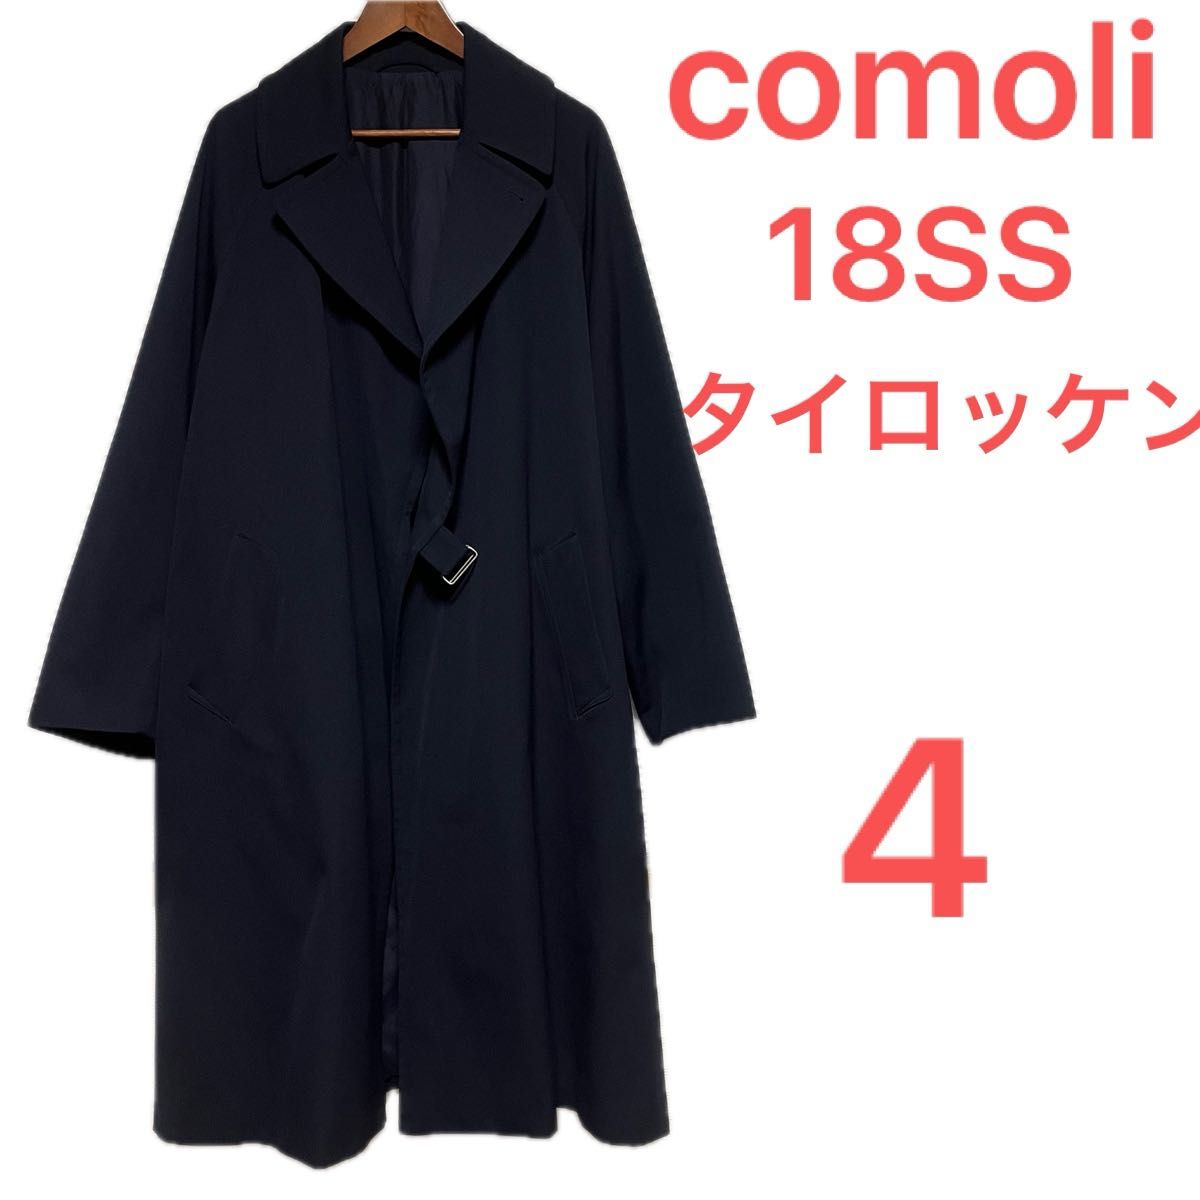 4/XL comoli 18ss ウールサージタイロッケンコート コモリ m01-04002 